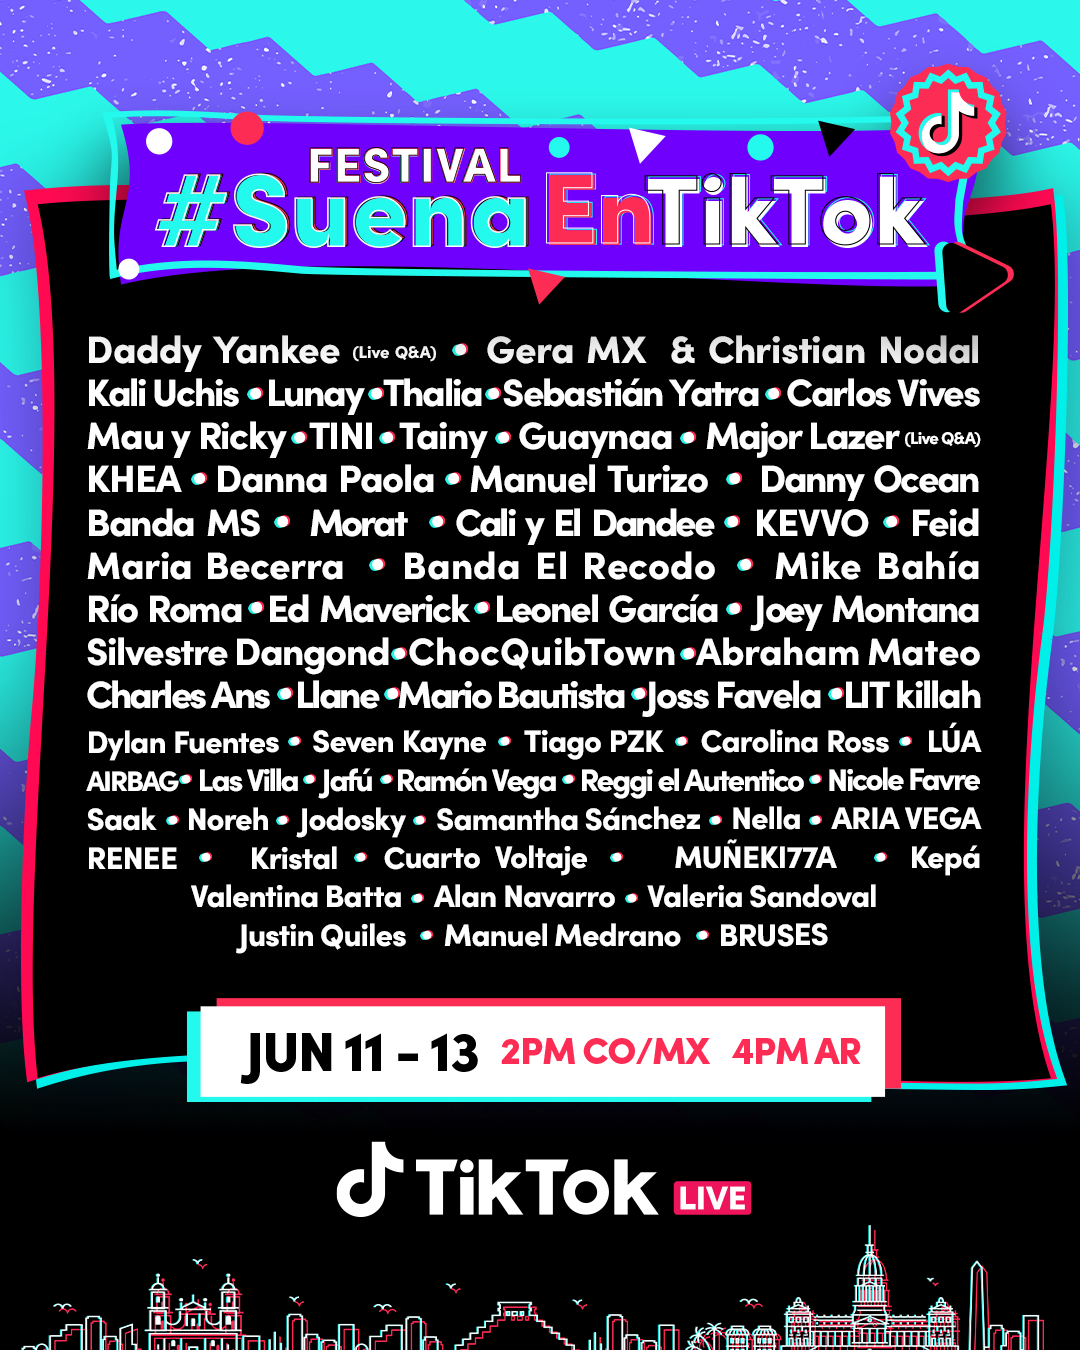 Suena en TikTok: El primer festival musical que arma una red social